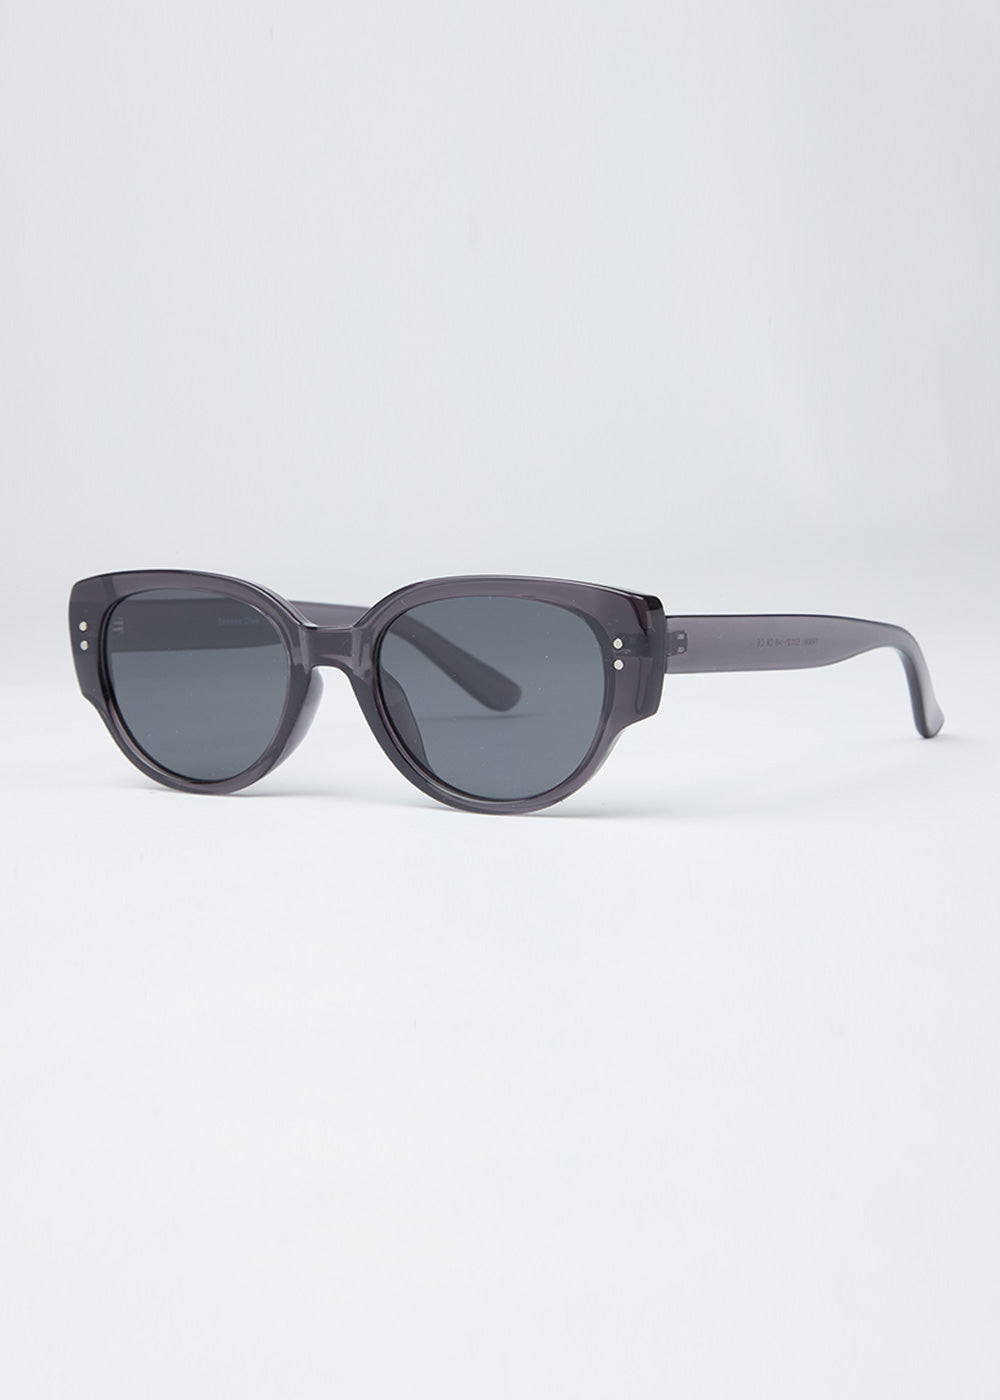 SheerSlate Unisex Oval Sunglasses